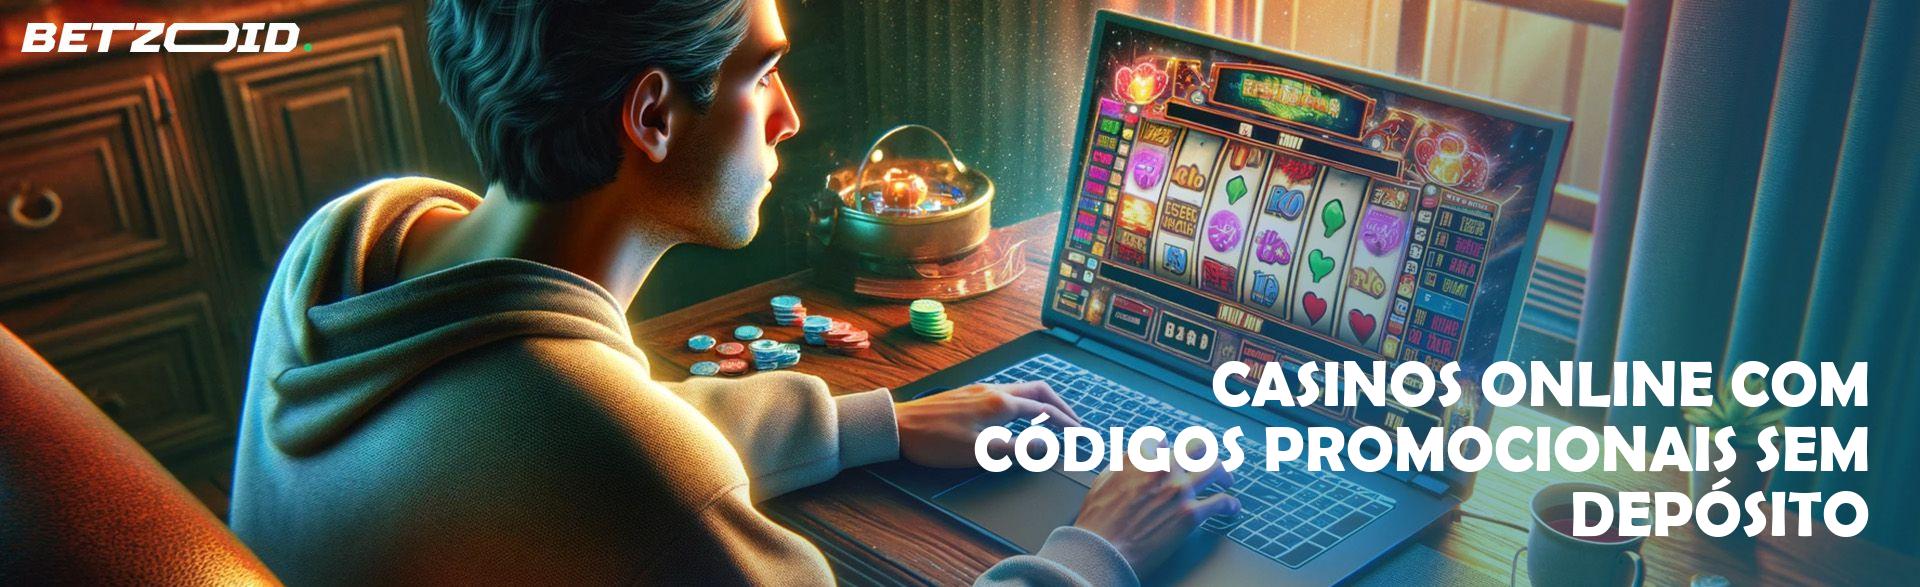 Casinos Online com Códigos Promocionais sem Depósito.